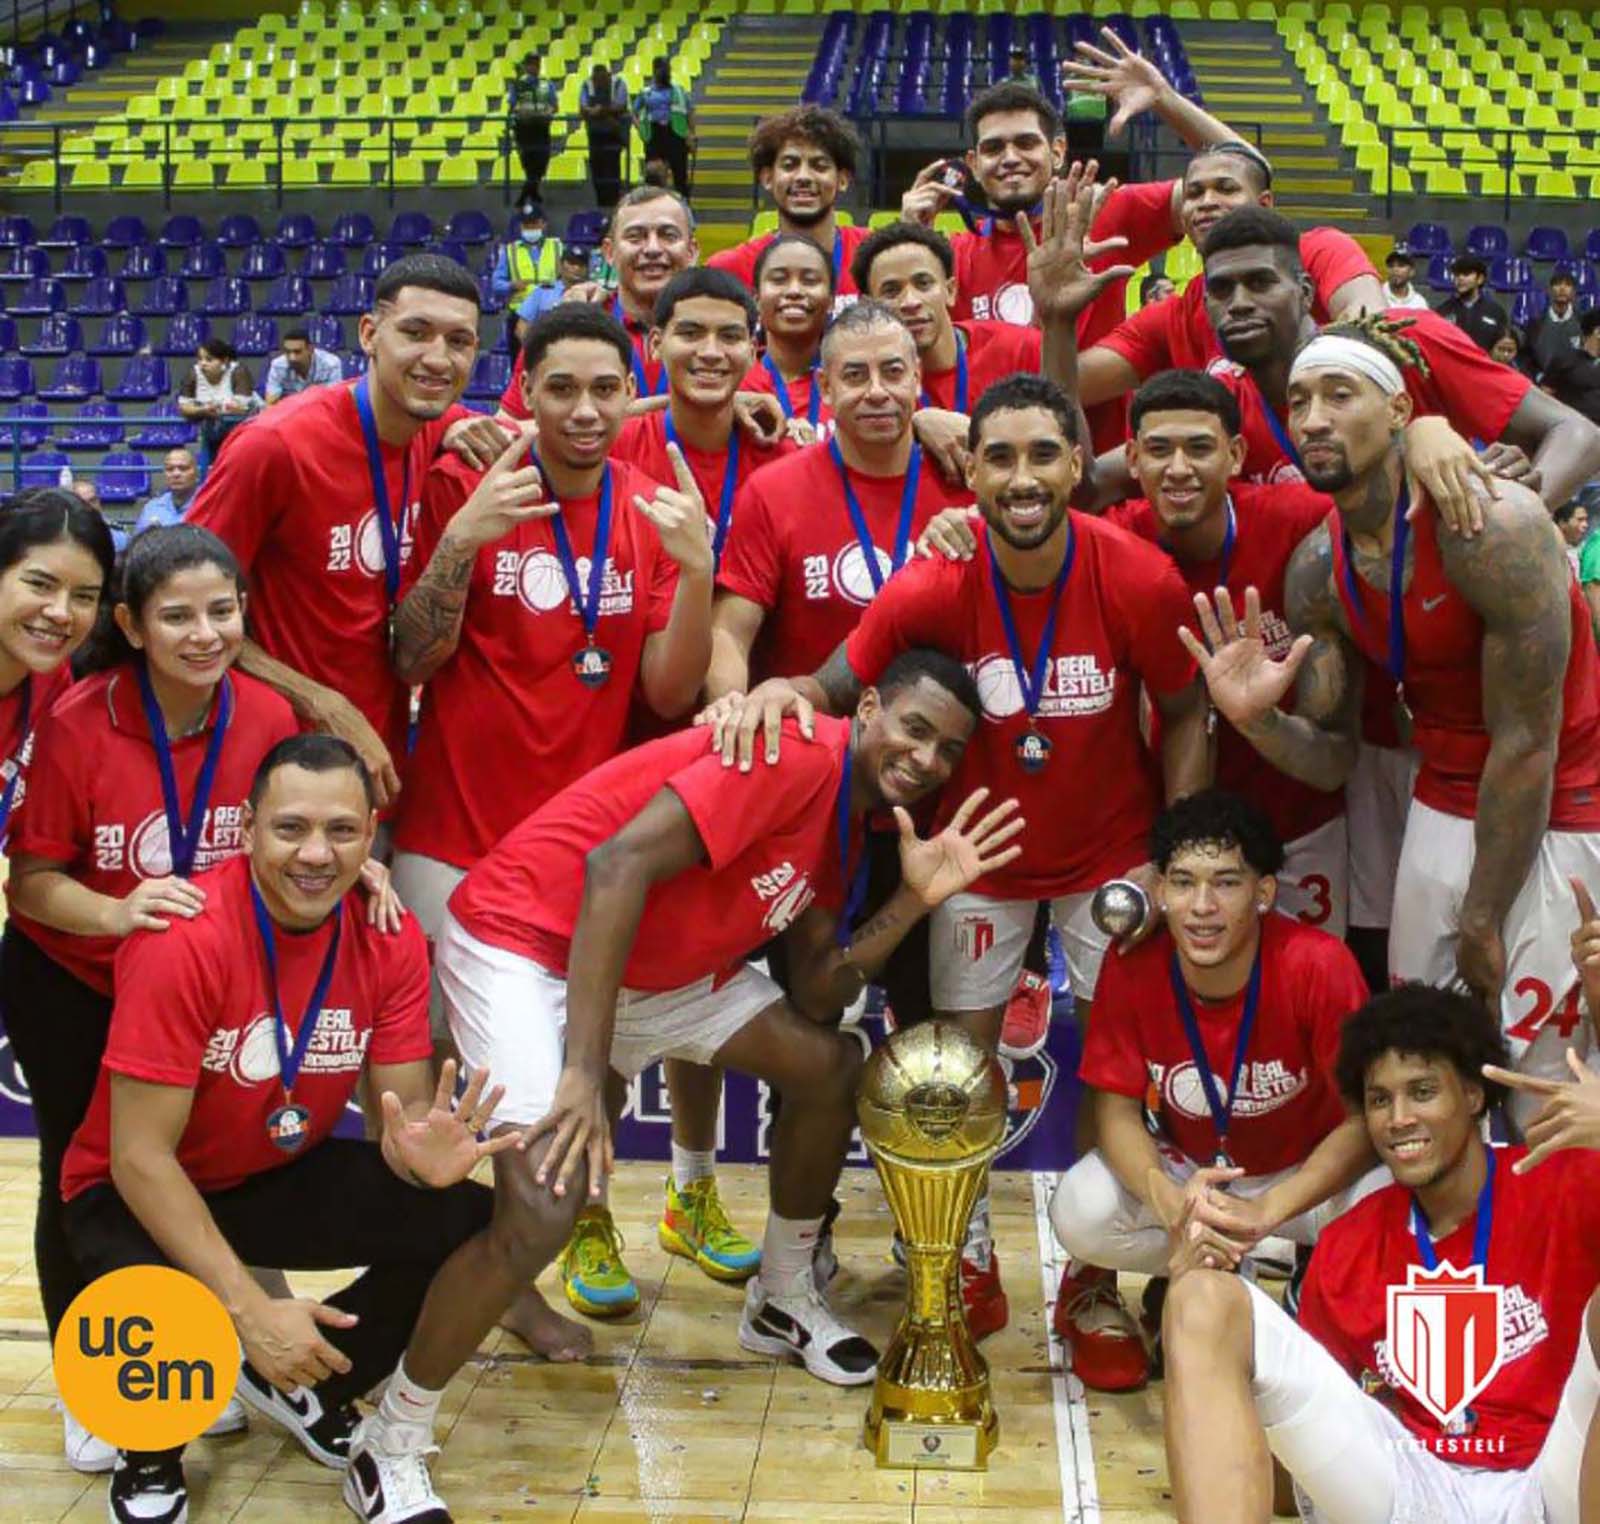 El Real Estelí Basket consiguió proclamarse con el pentacampeonato, luego de vencer por marcador 90-68 a las Brumas de Jinotega en el quinto y decisivo partido de la serie final en la LSB